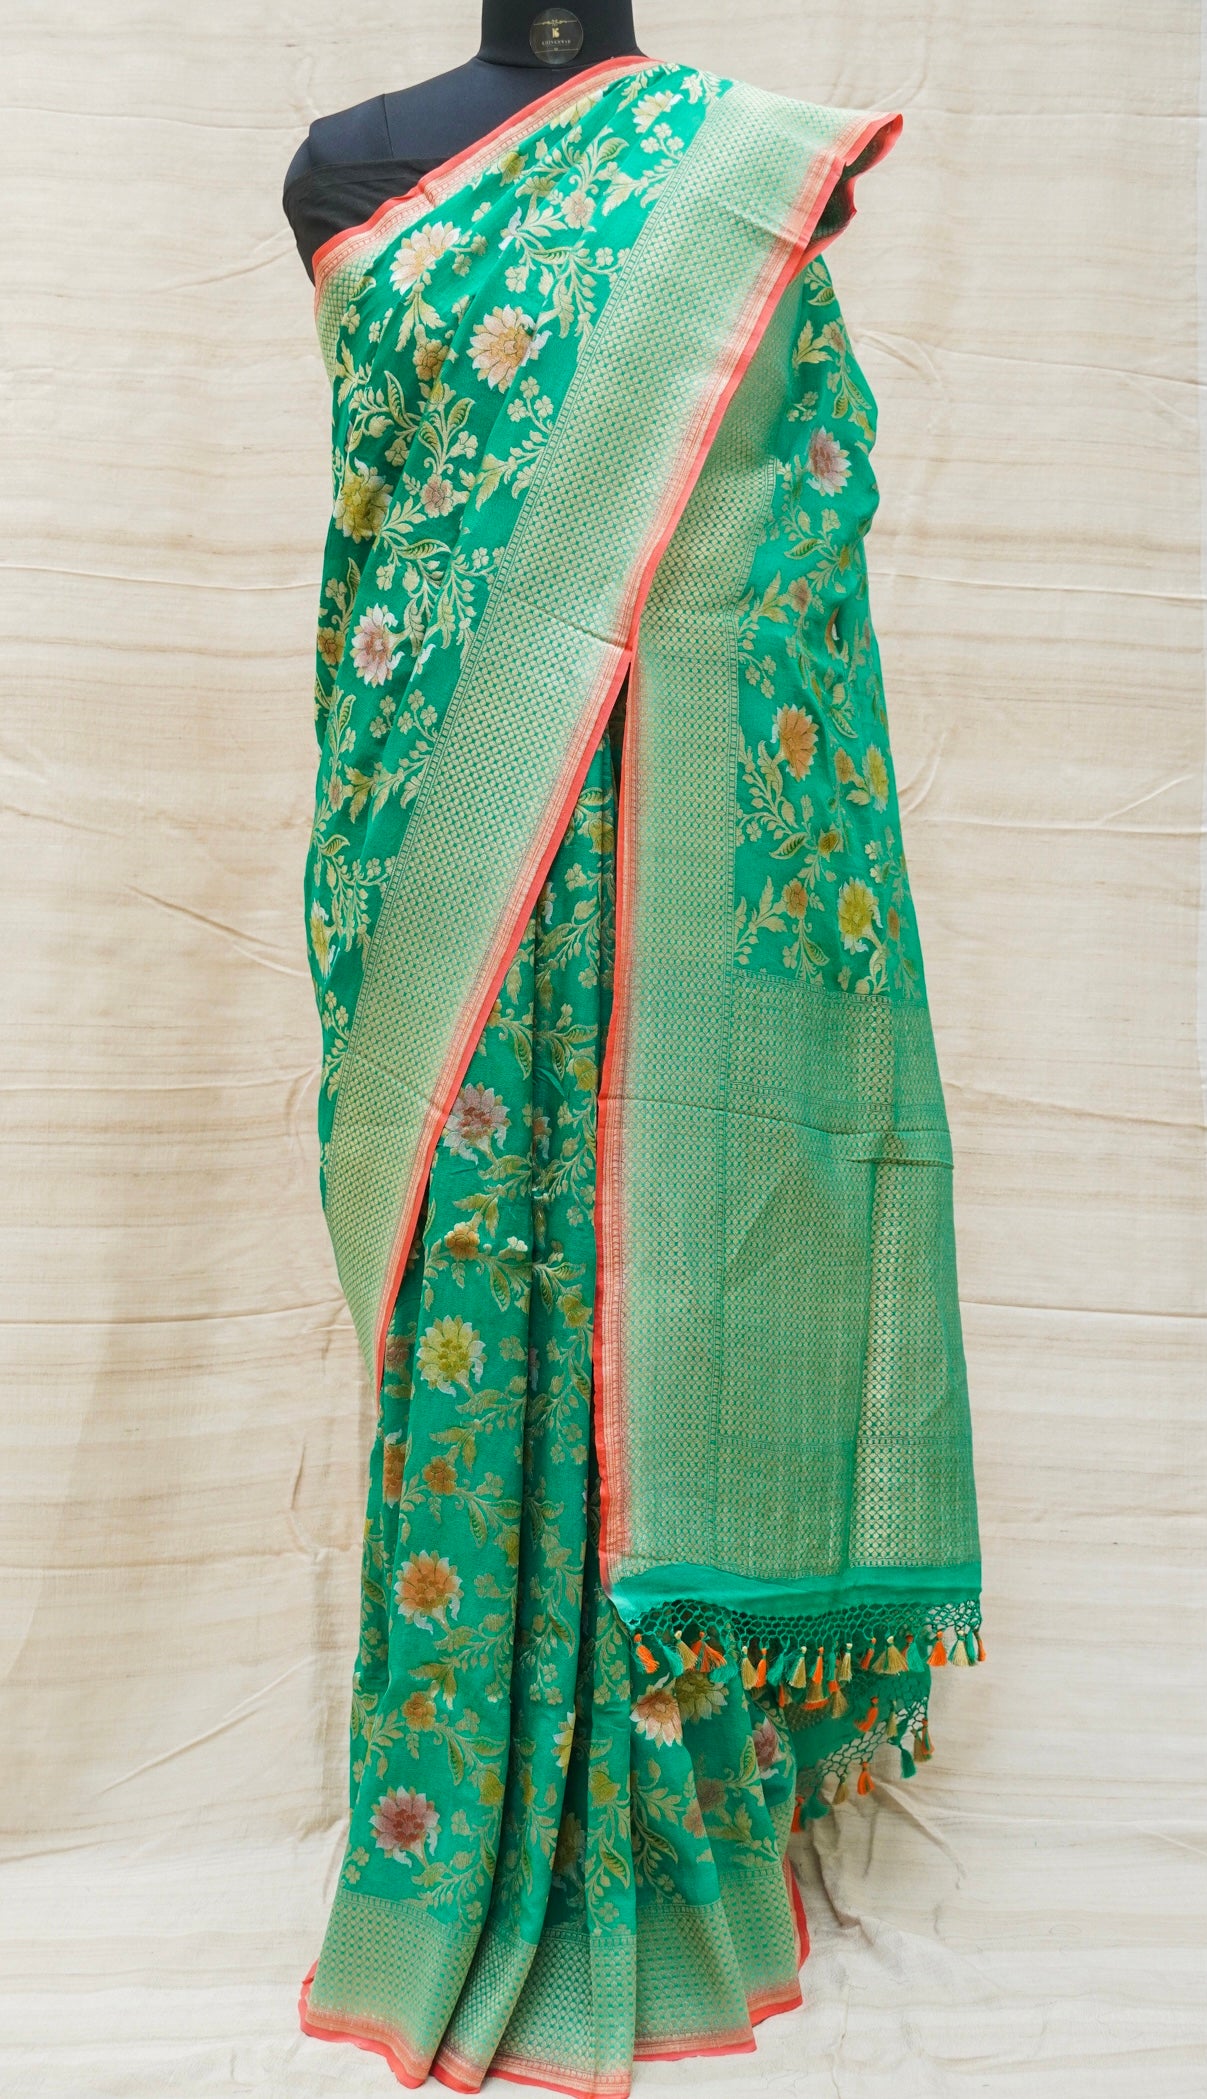 Pure Georgette Handloom Banarasi Marigold Saree - Khinkhwab